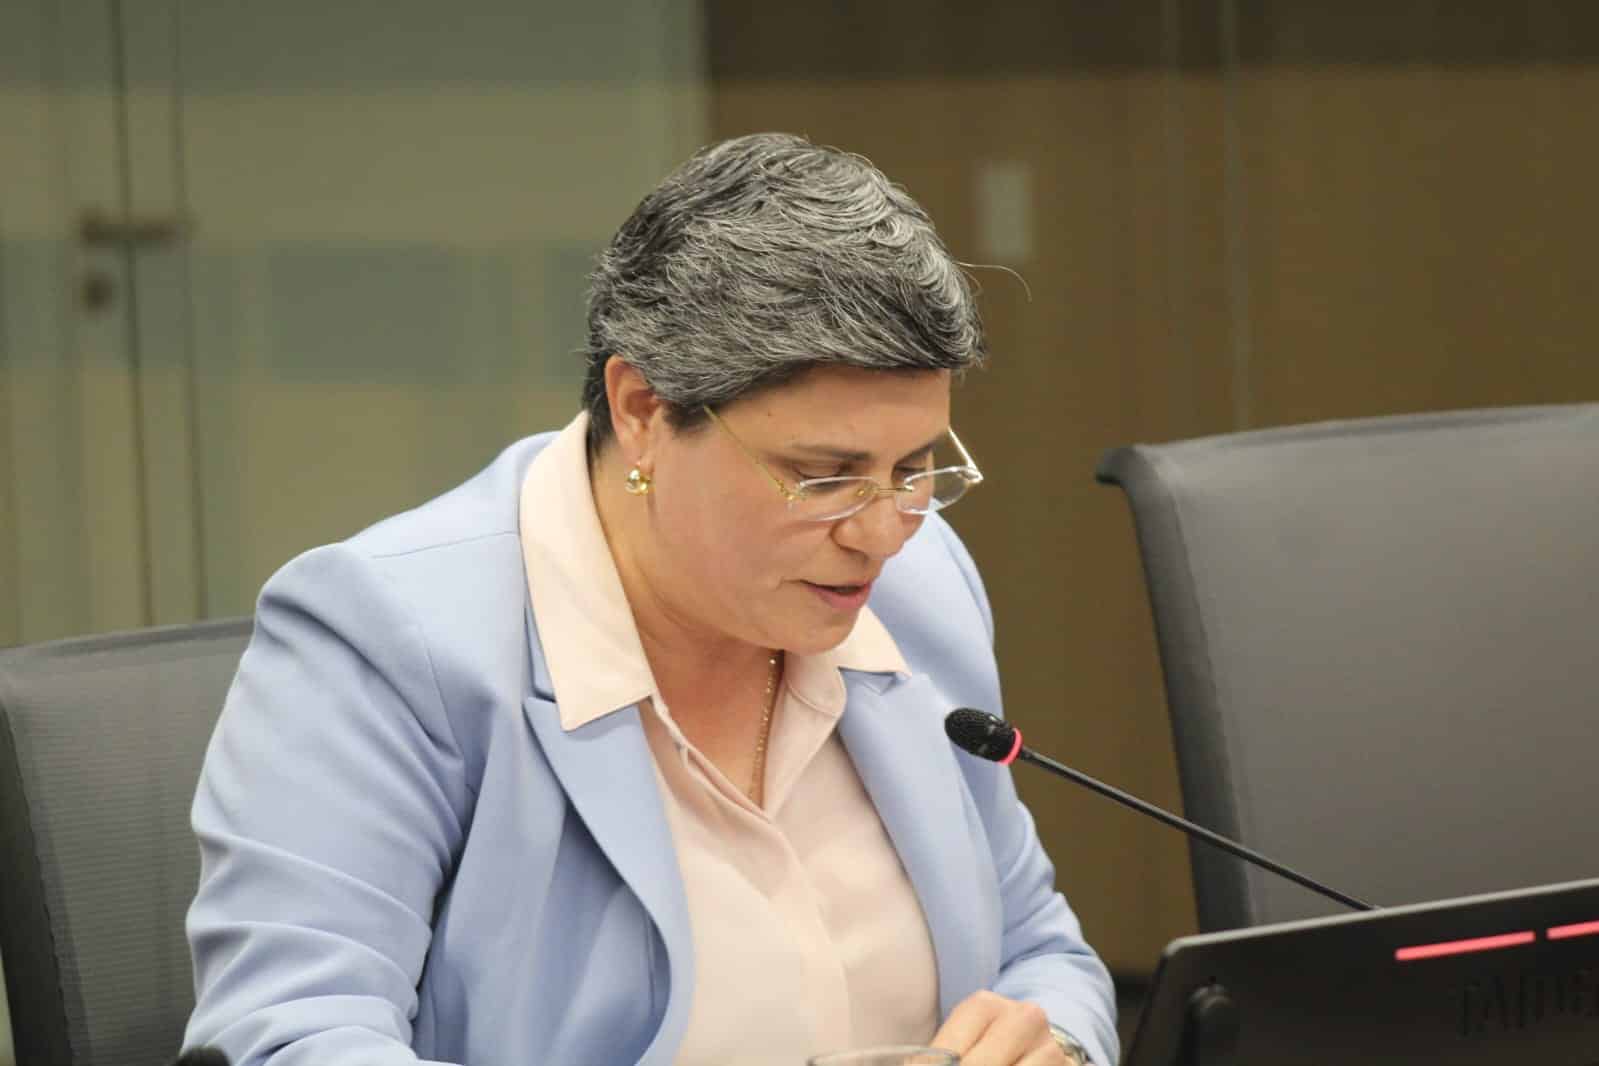 PLN retiró apoyo a Laura Arguedas para defensora: “Ella tiene la madurez para entender que no teníamos los votos”